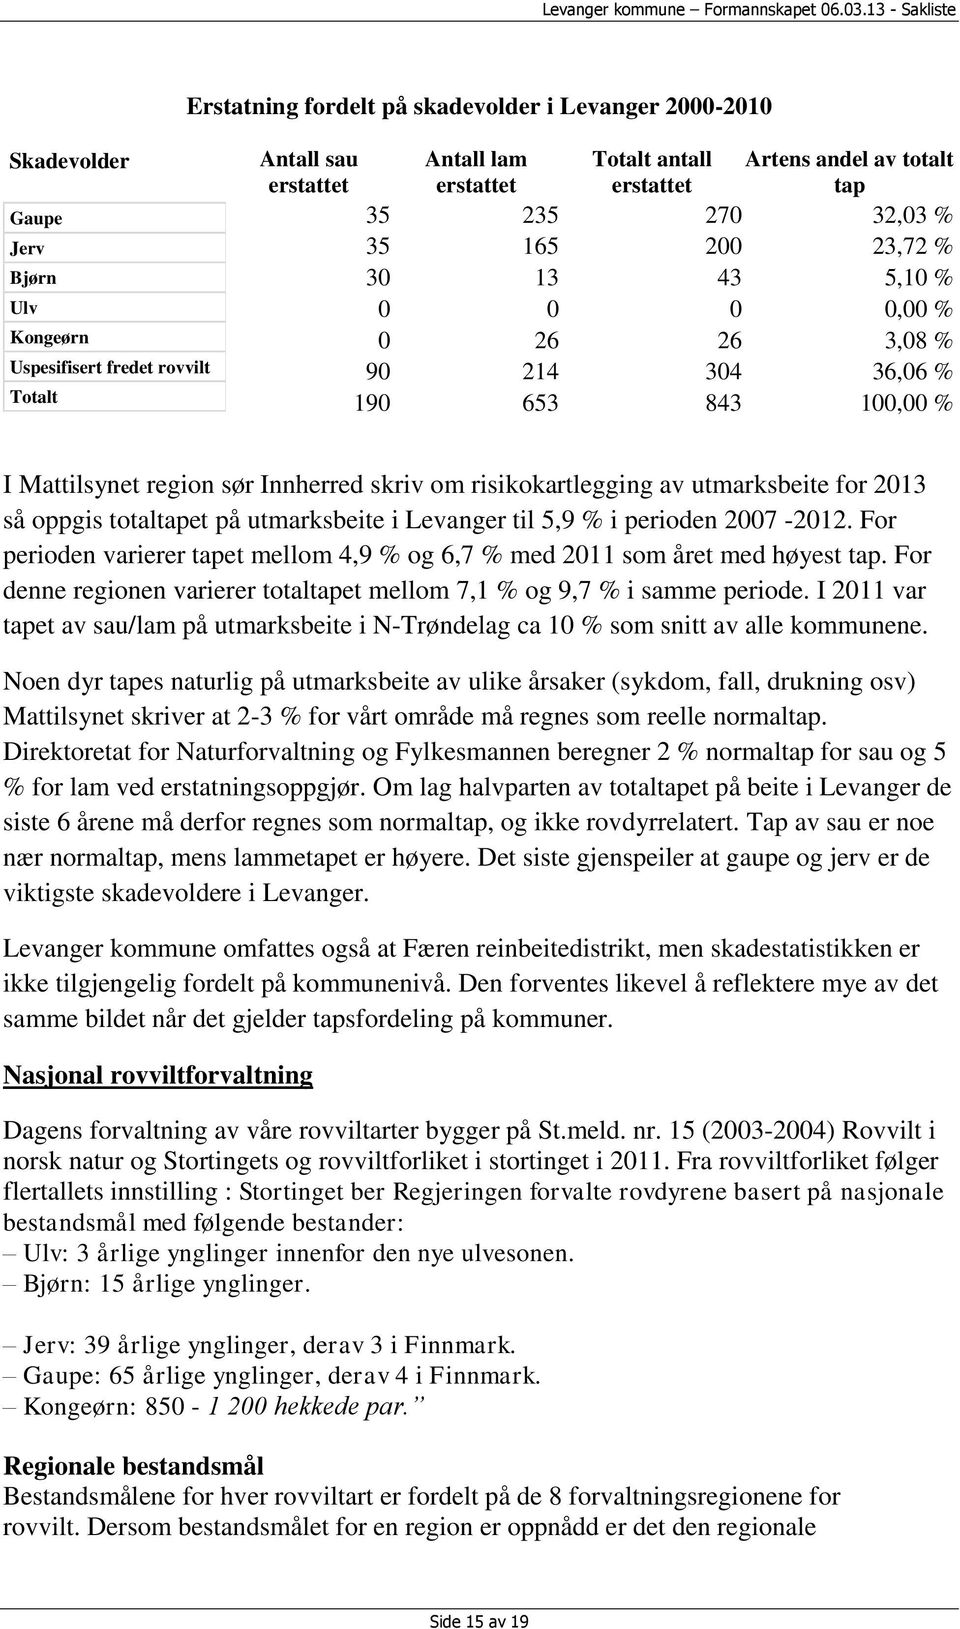 risikokartlegging av utmarksbeite for 2013 så oppgis totaltapet på utmarksbeite i Levanger til 5,9 % i perioden 2007-2012.